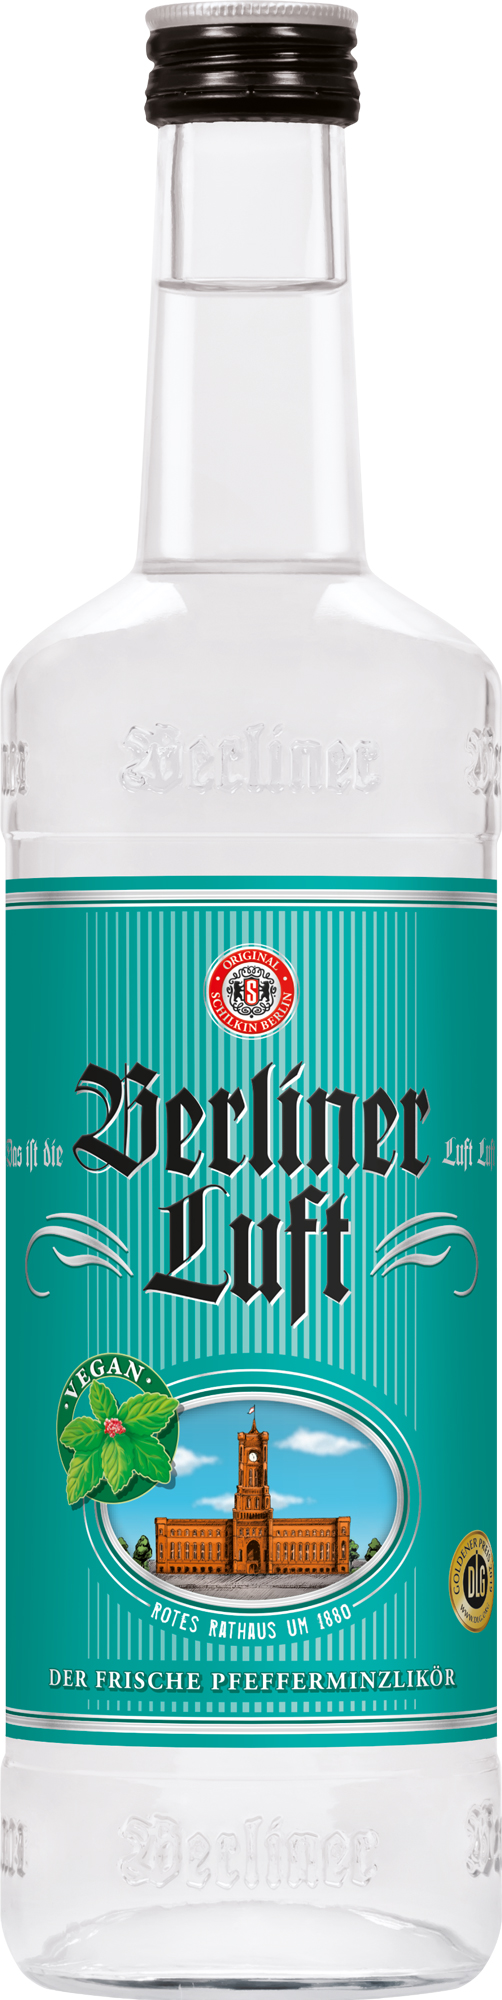 Berliner Luft - Pfefferminzlikör 0,7l 18%vol.